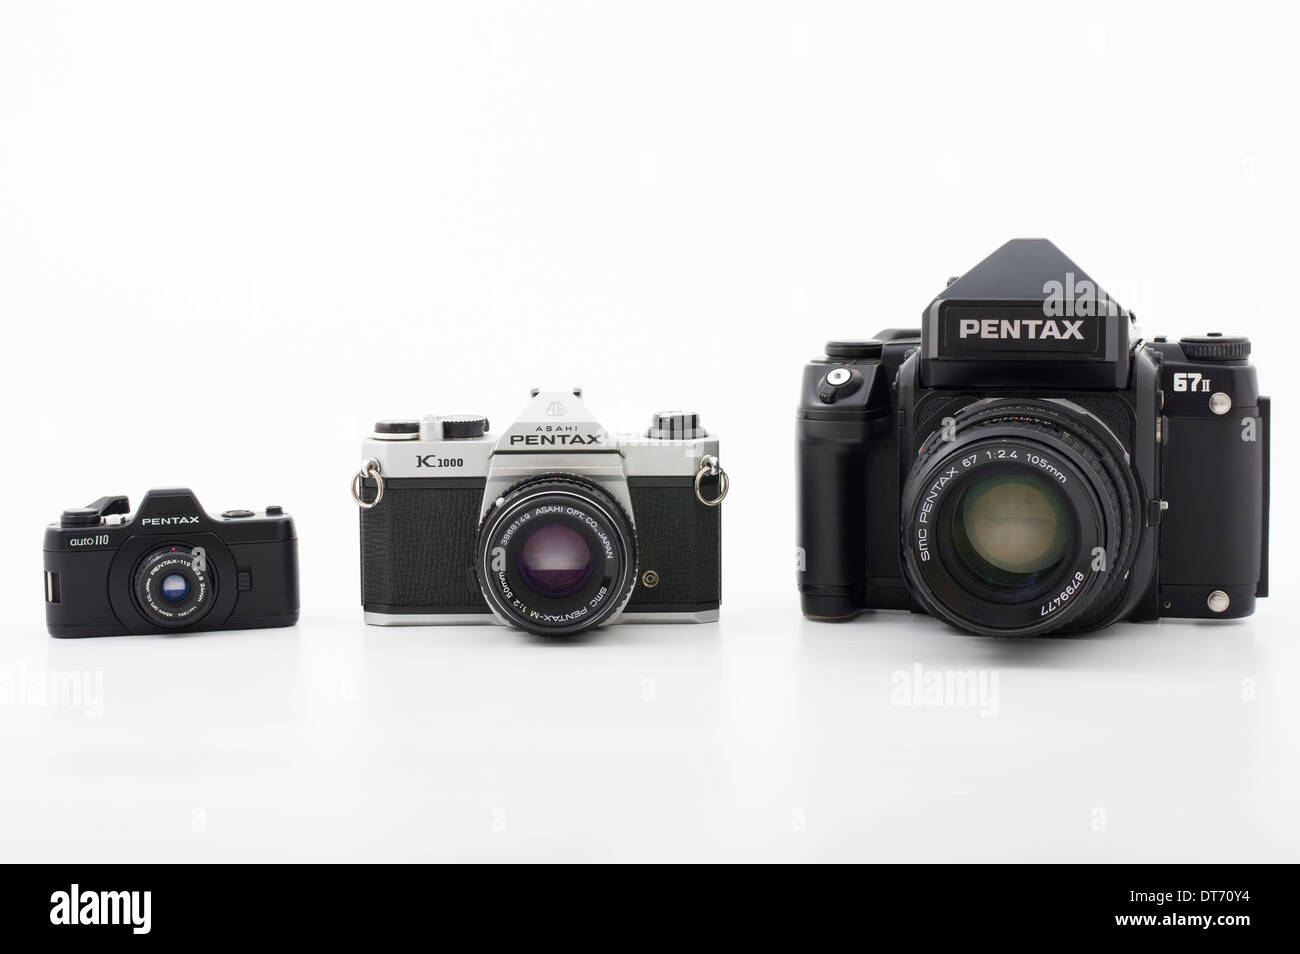 Pentax film fotocamere reflex in diversi formati di pellicola. 67II medio formato, K1000 35mm, Auto110 110 film Foto Stock